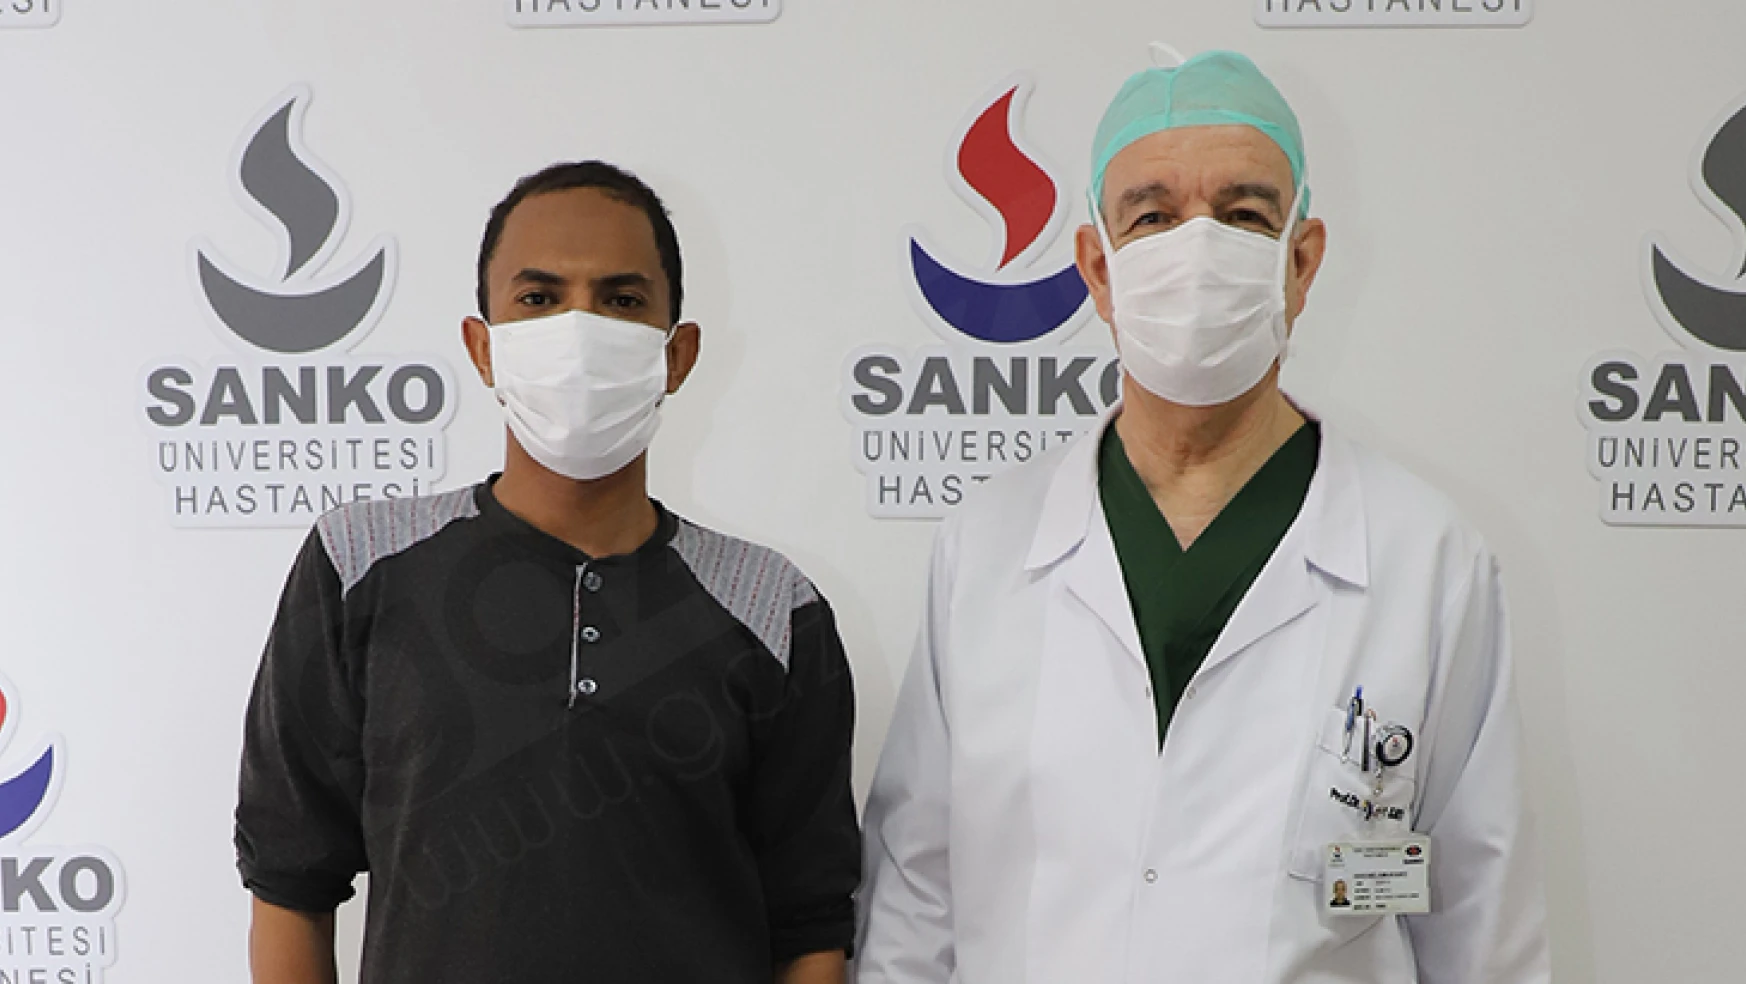 Şifa bulmak için Sudan'dan SANKO Hastanesi'ne geldi